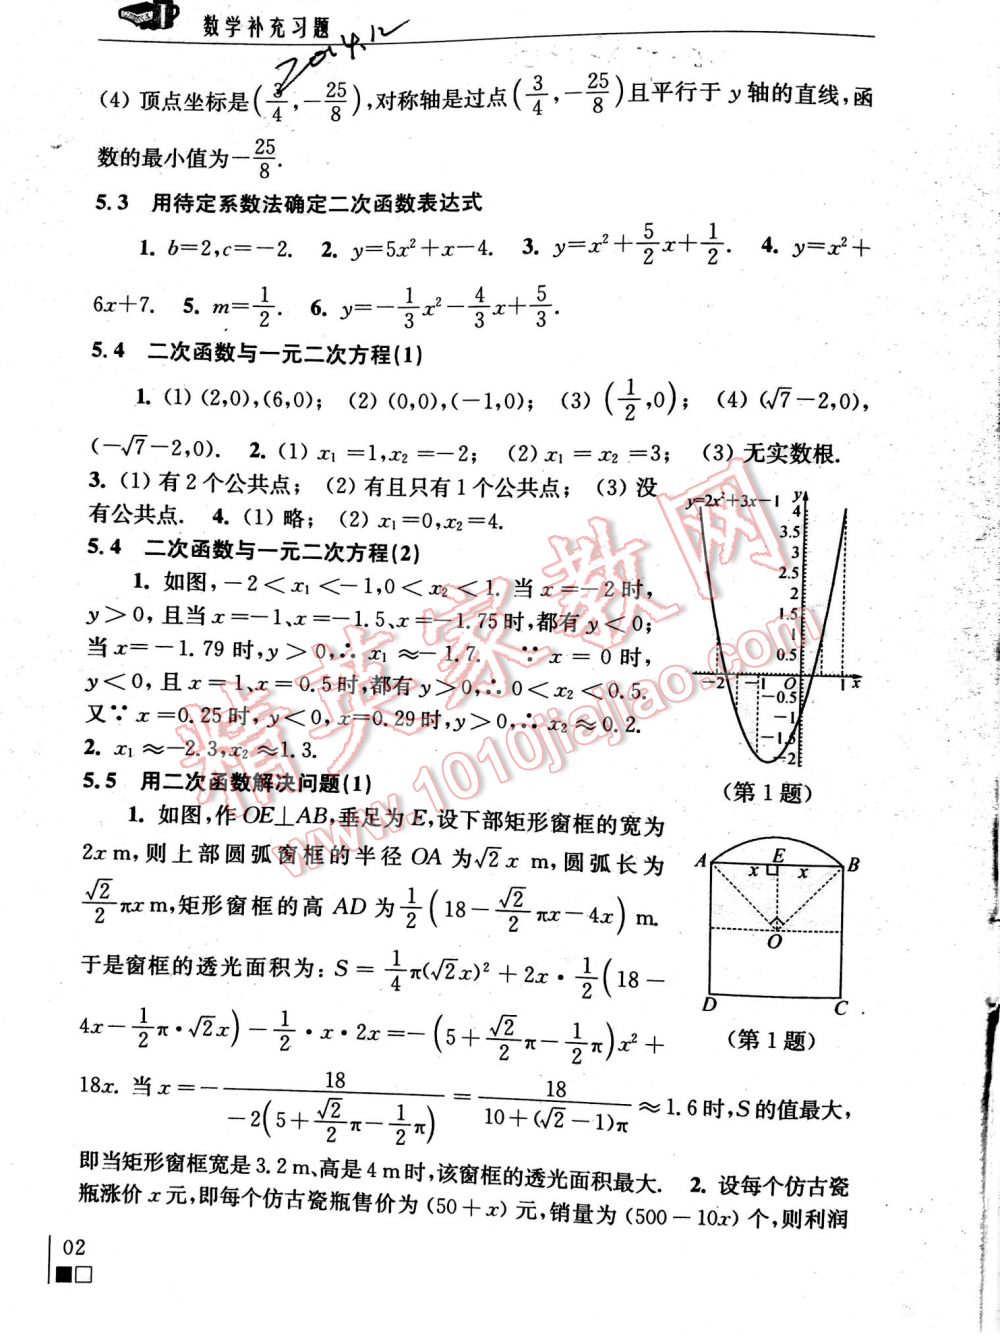 2016年数学补充习题九年级下册苏科版江苏凤凰科学技术出版社 第1002页